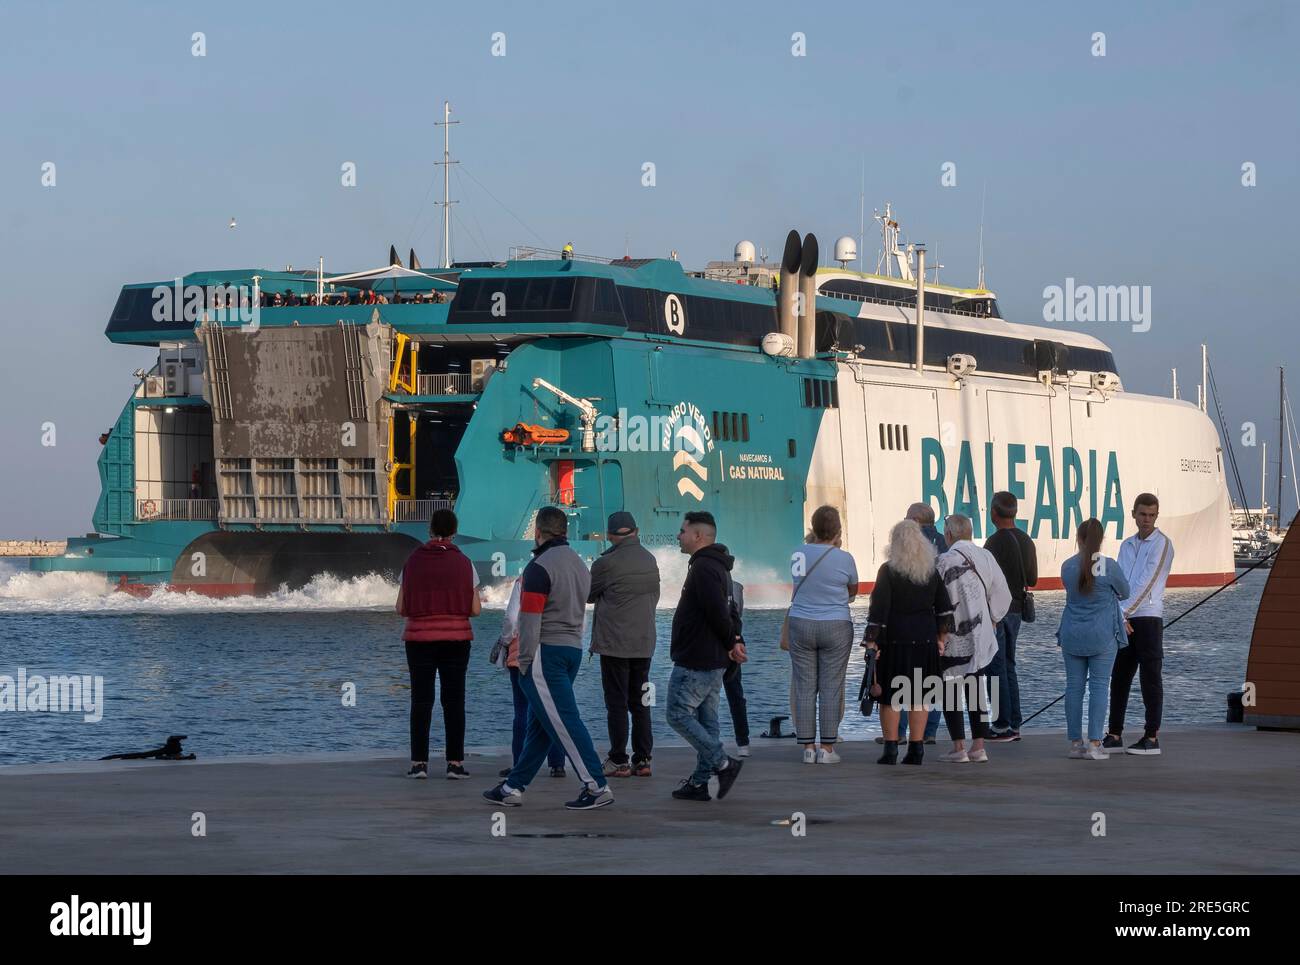 Die gasbetriebenen Fähren fahren von Denia nach Ibiza, Formentera und Palma  de Mallorca Stockfotografie - Alamy